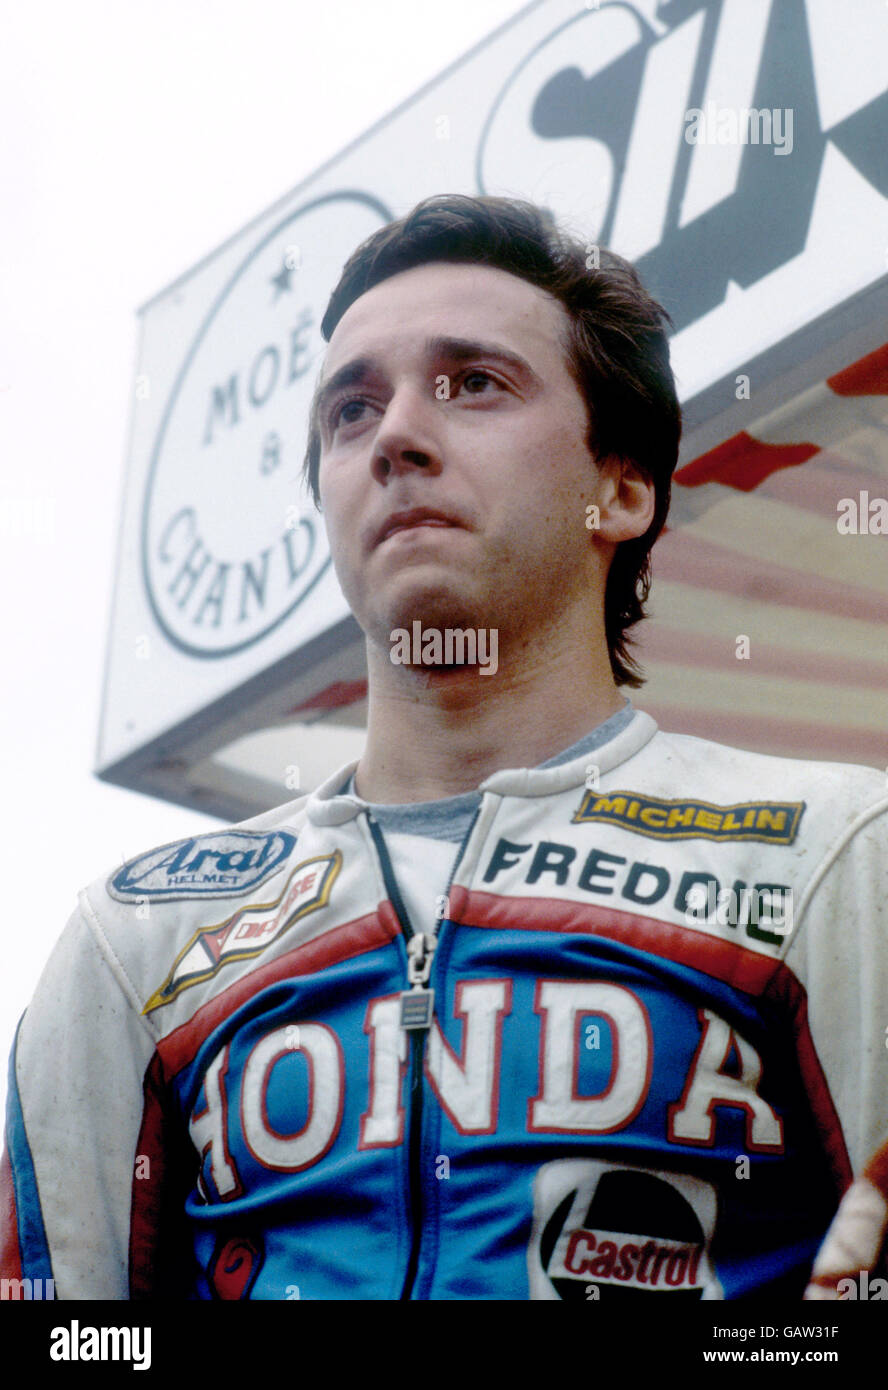 Der Amerikaner Freddie Spencer, bekannt unter dem Spitznamen "Fast Freddie", der als jüngster Fahrer 1983 die 500-ccm-Weltmeisterschaft gewann, als er den amerikanischen Kollegen Kenny Roberts in einer der spannendsten und spannendsten Titeljagden der Rennrad-Geschichte besiegte. Stockfoto